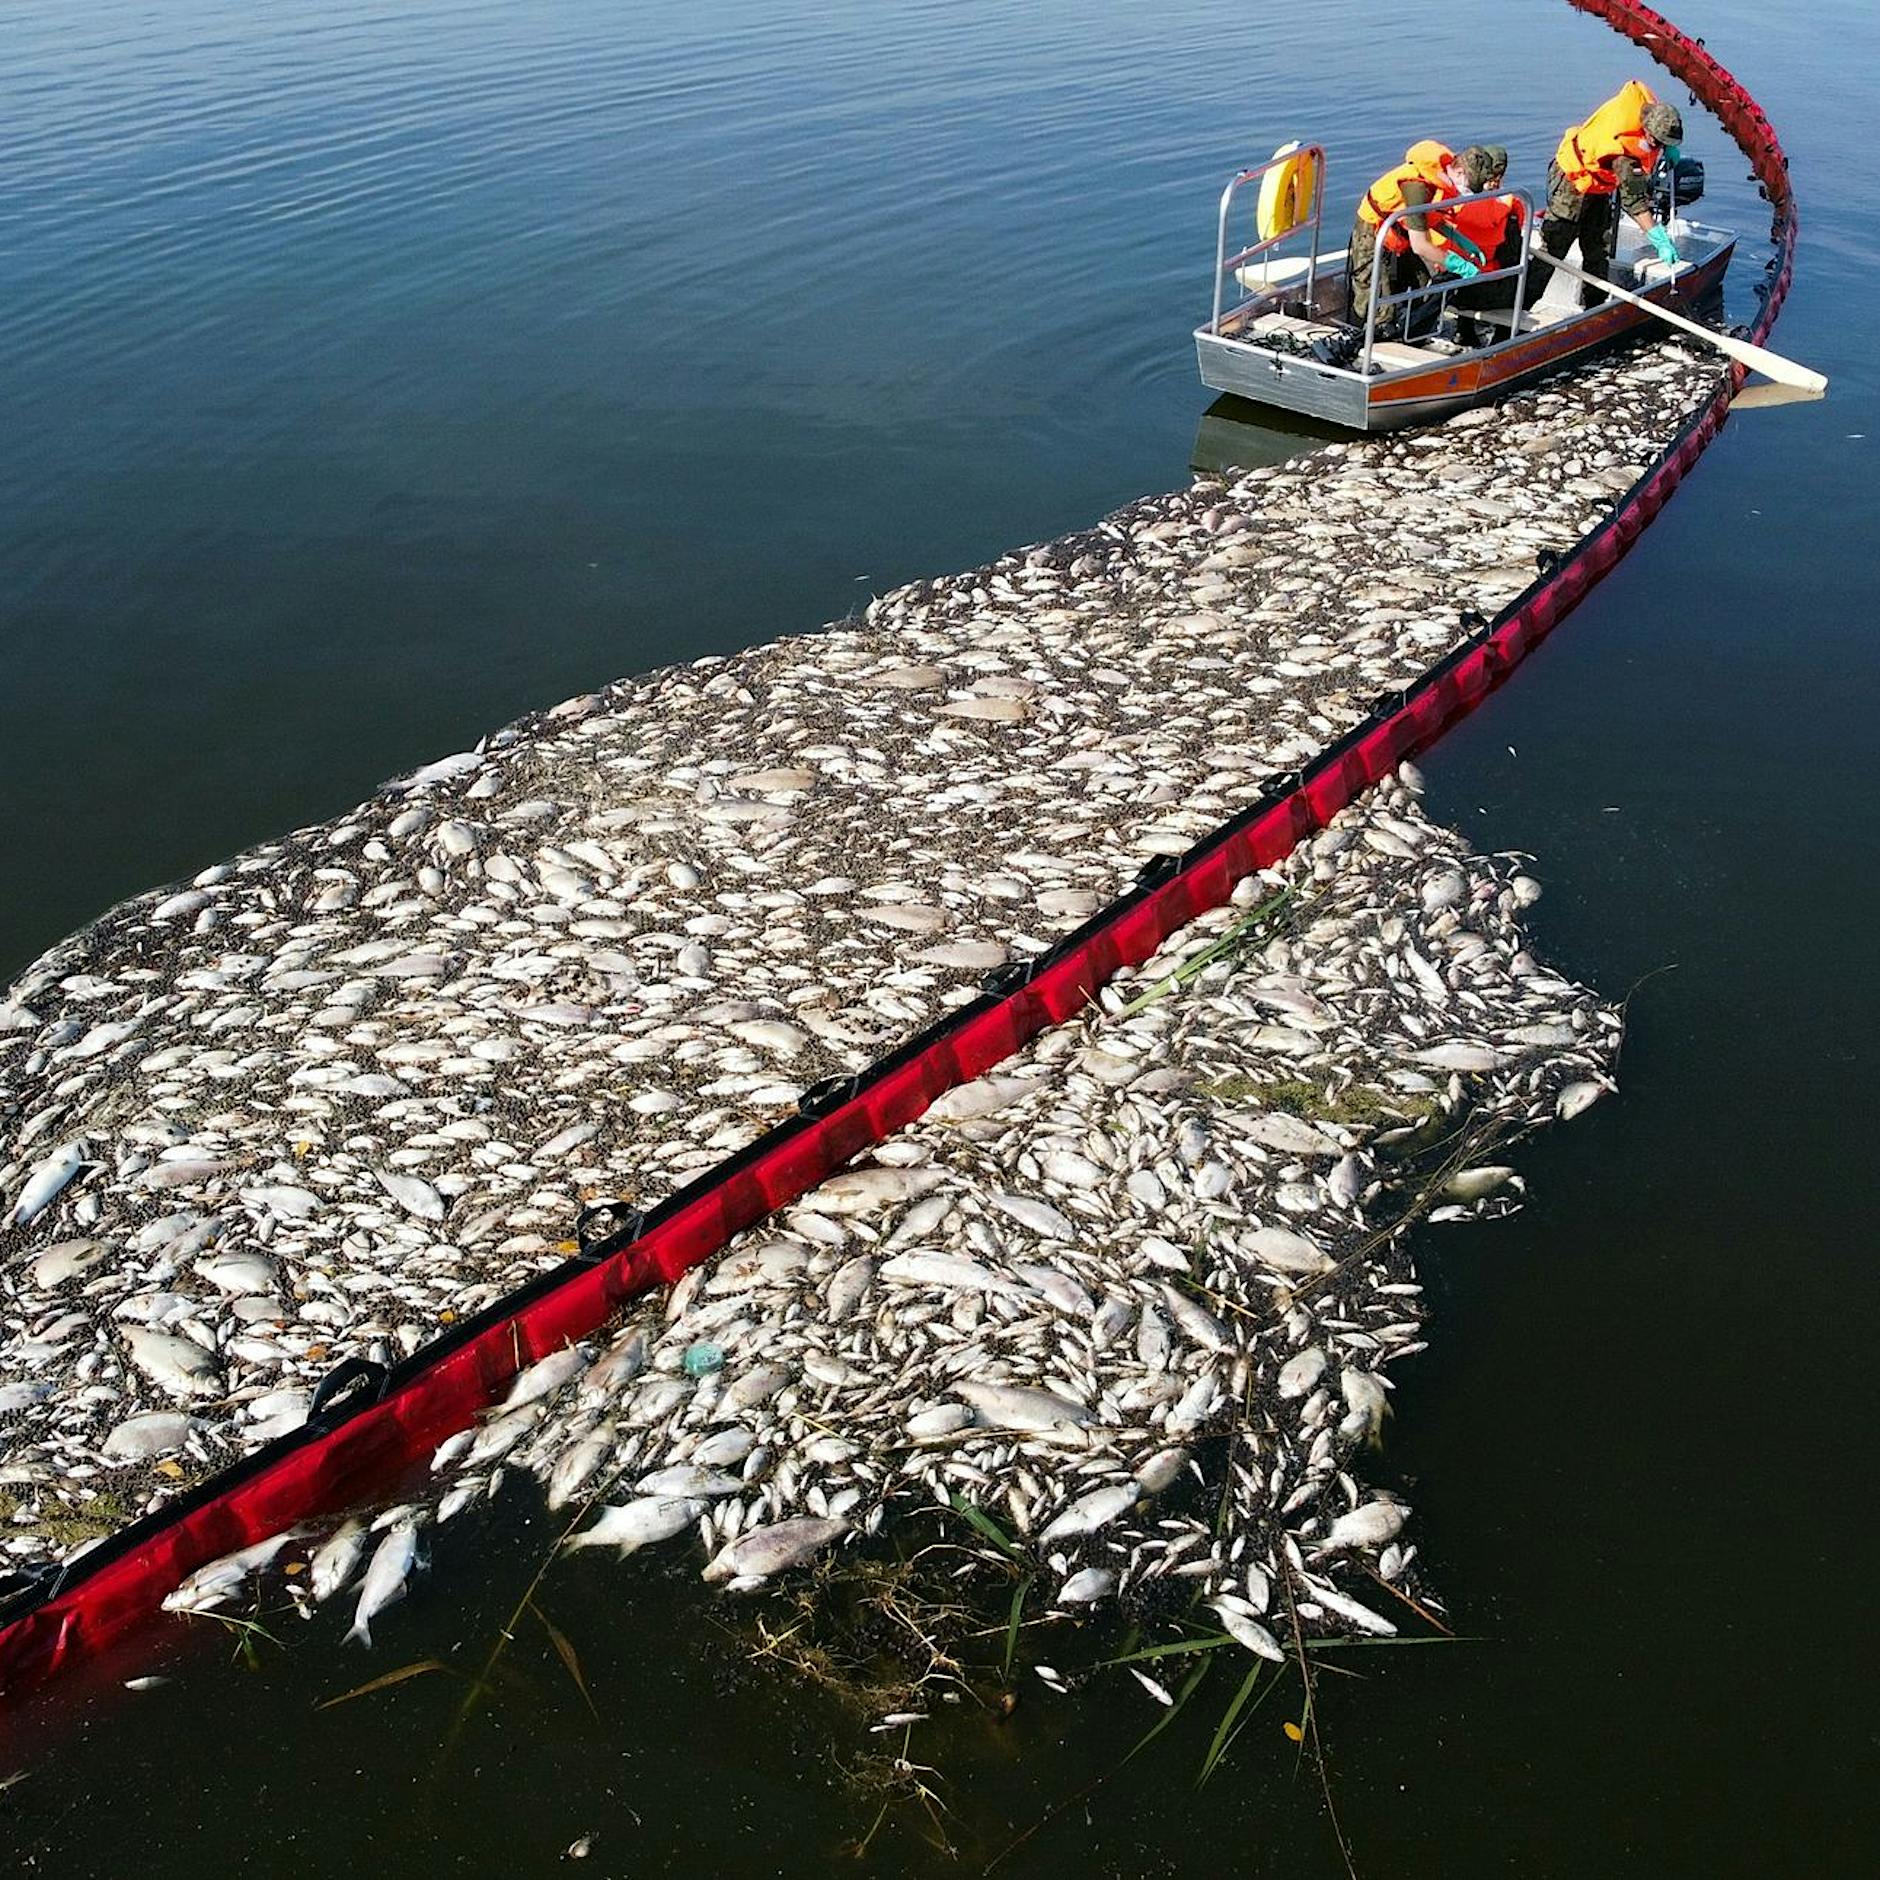 Śmierć ryb w Odrze: taki jest polski plan zapobieżenia kolejnej katastrofie ekologicznej